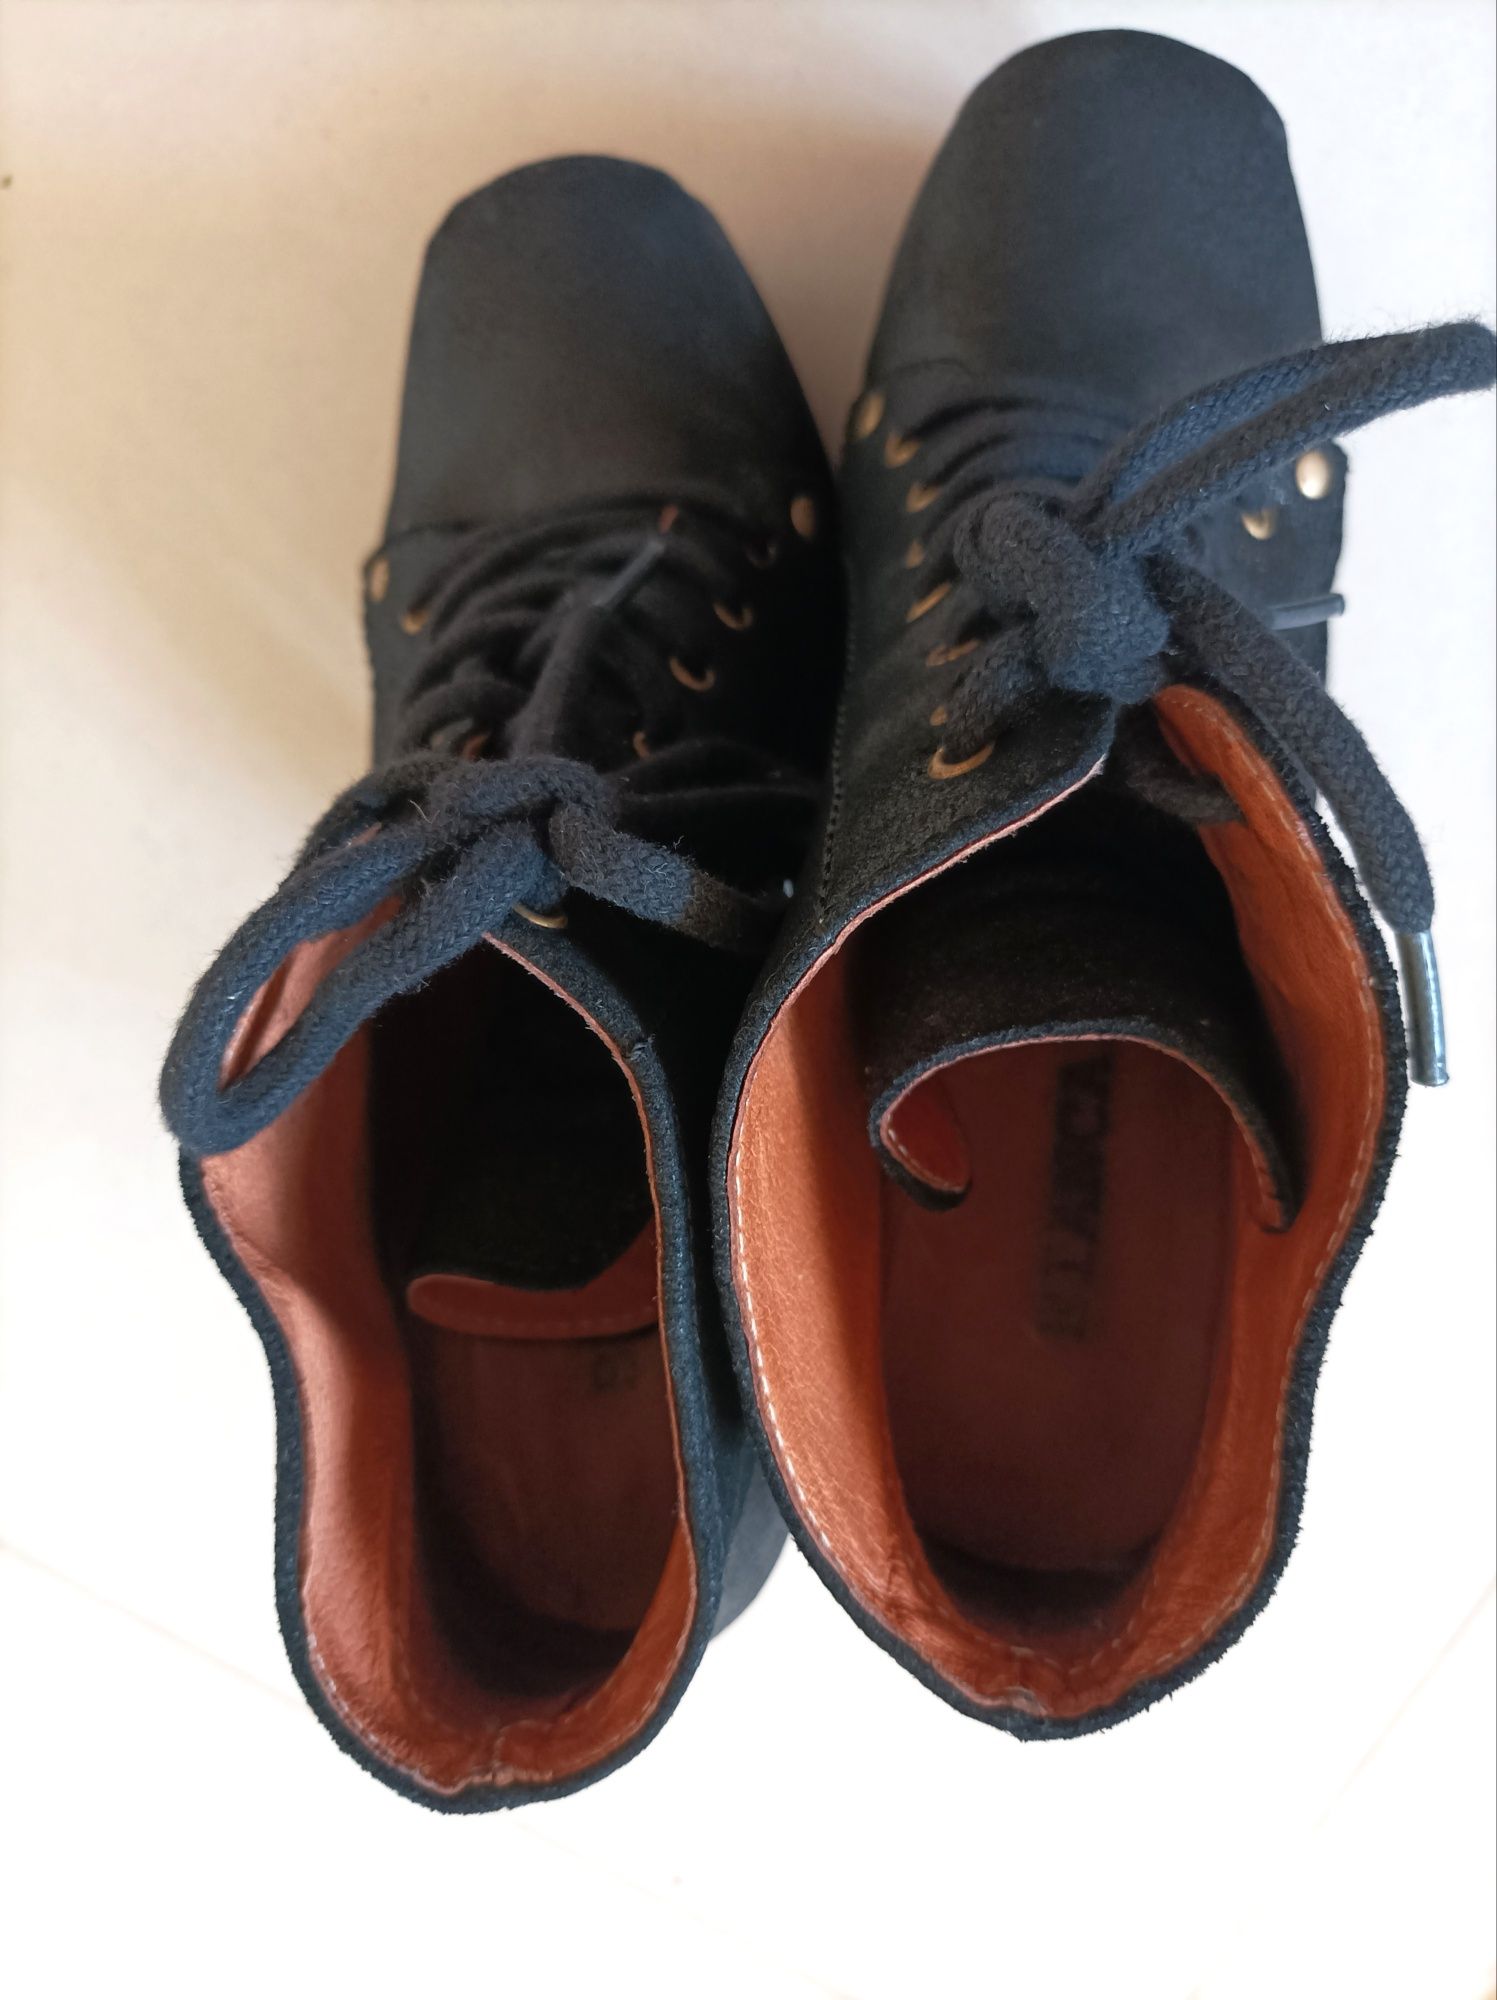 Sapatos pretos de Salto Alto marca Bianca (Tam. 37)